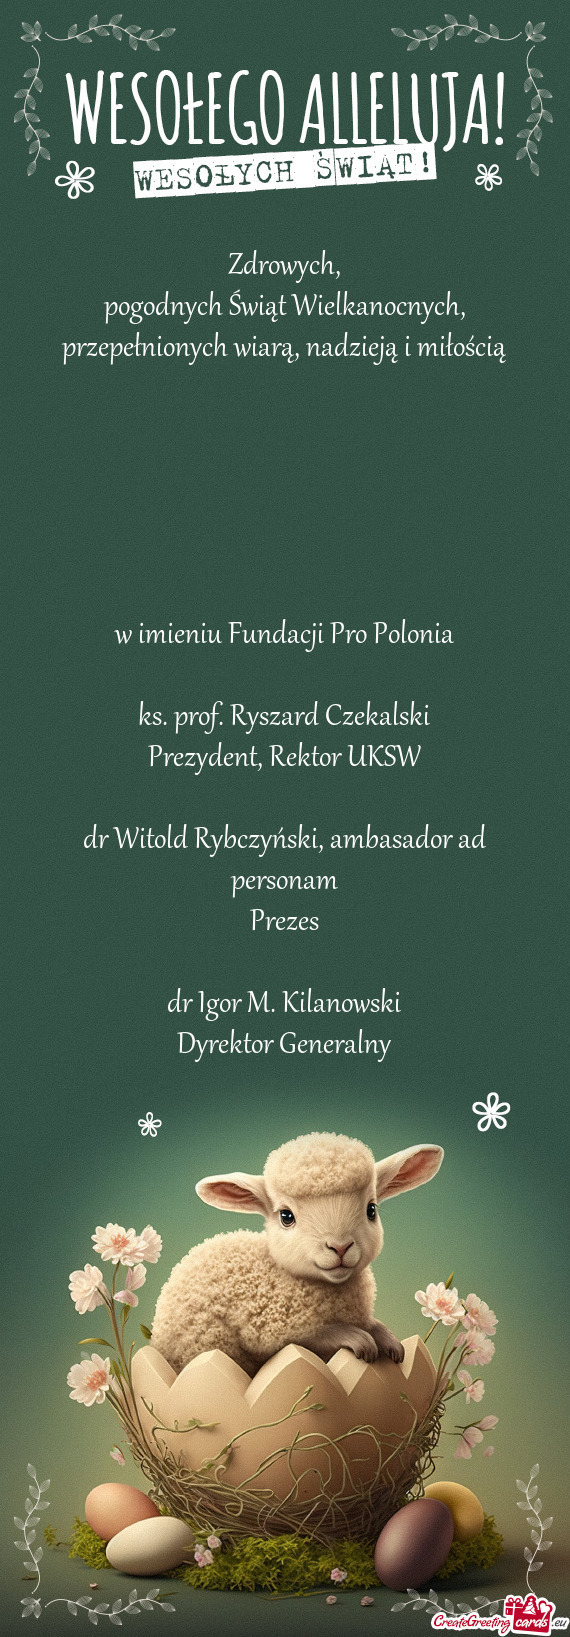 Ks. prof. Ryszard Czekalski